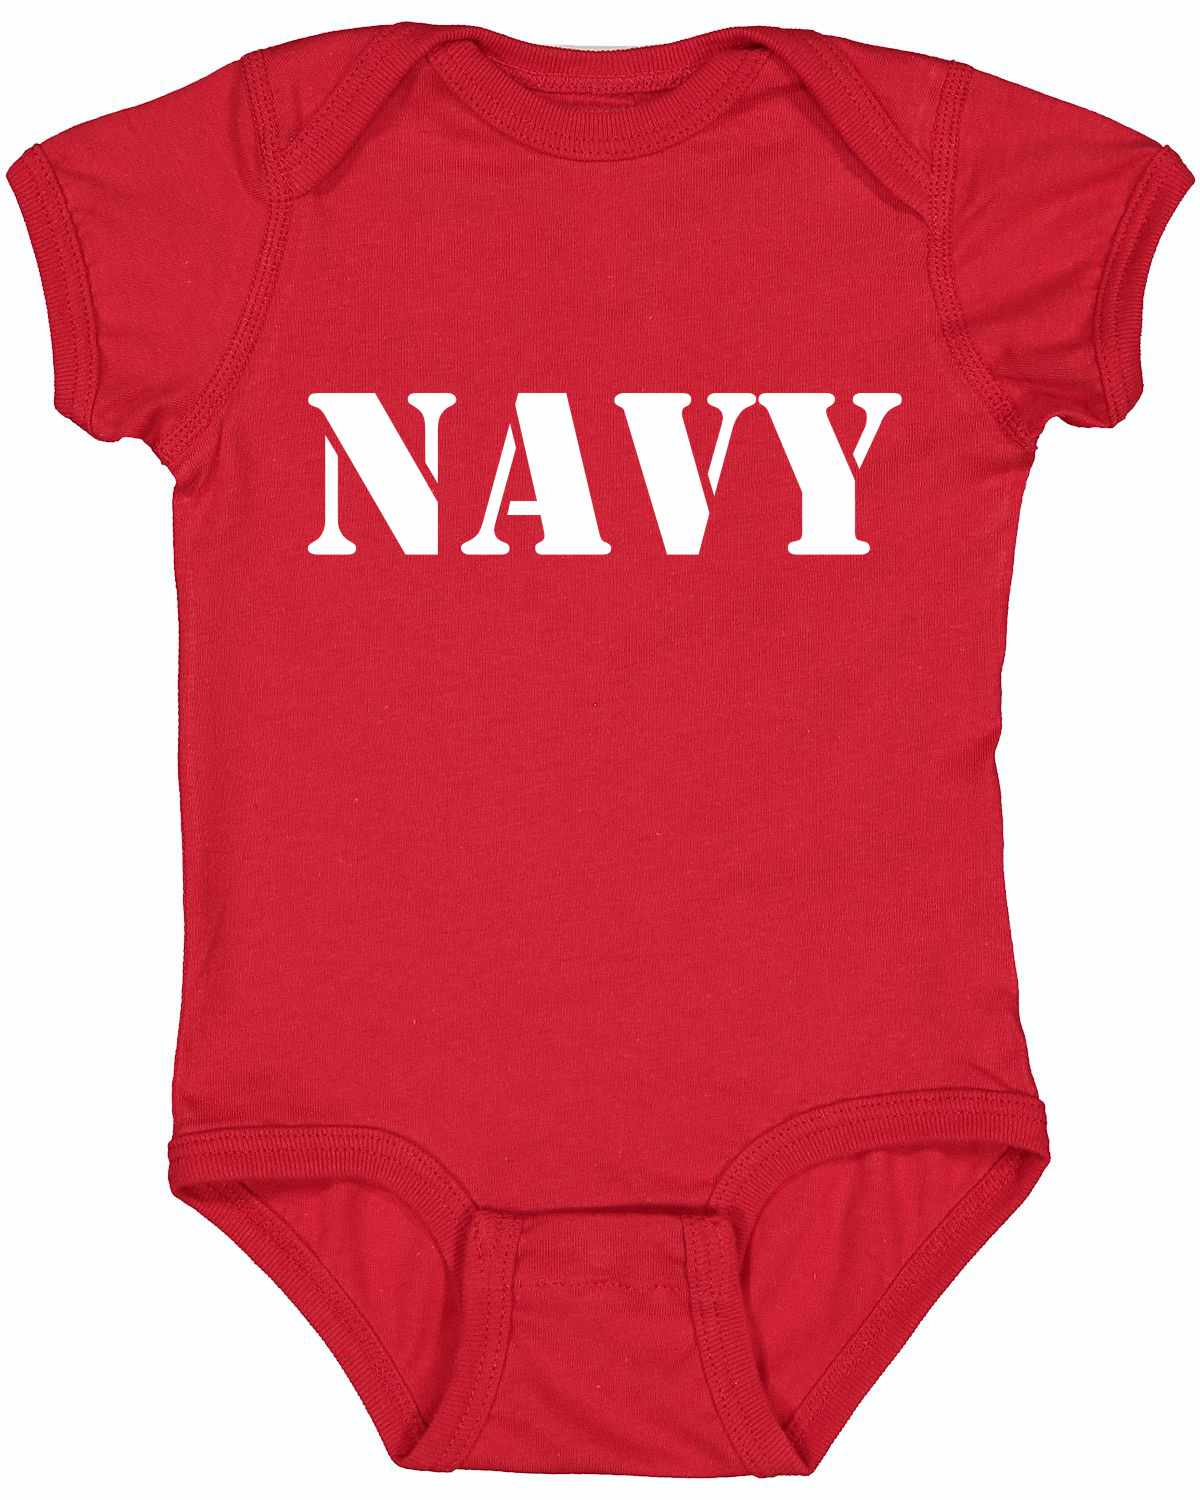 NAVY Infant BodySuit